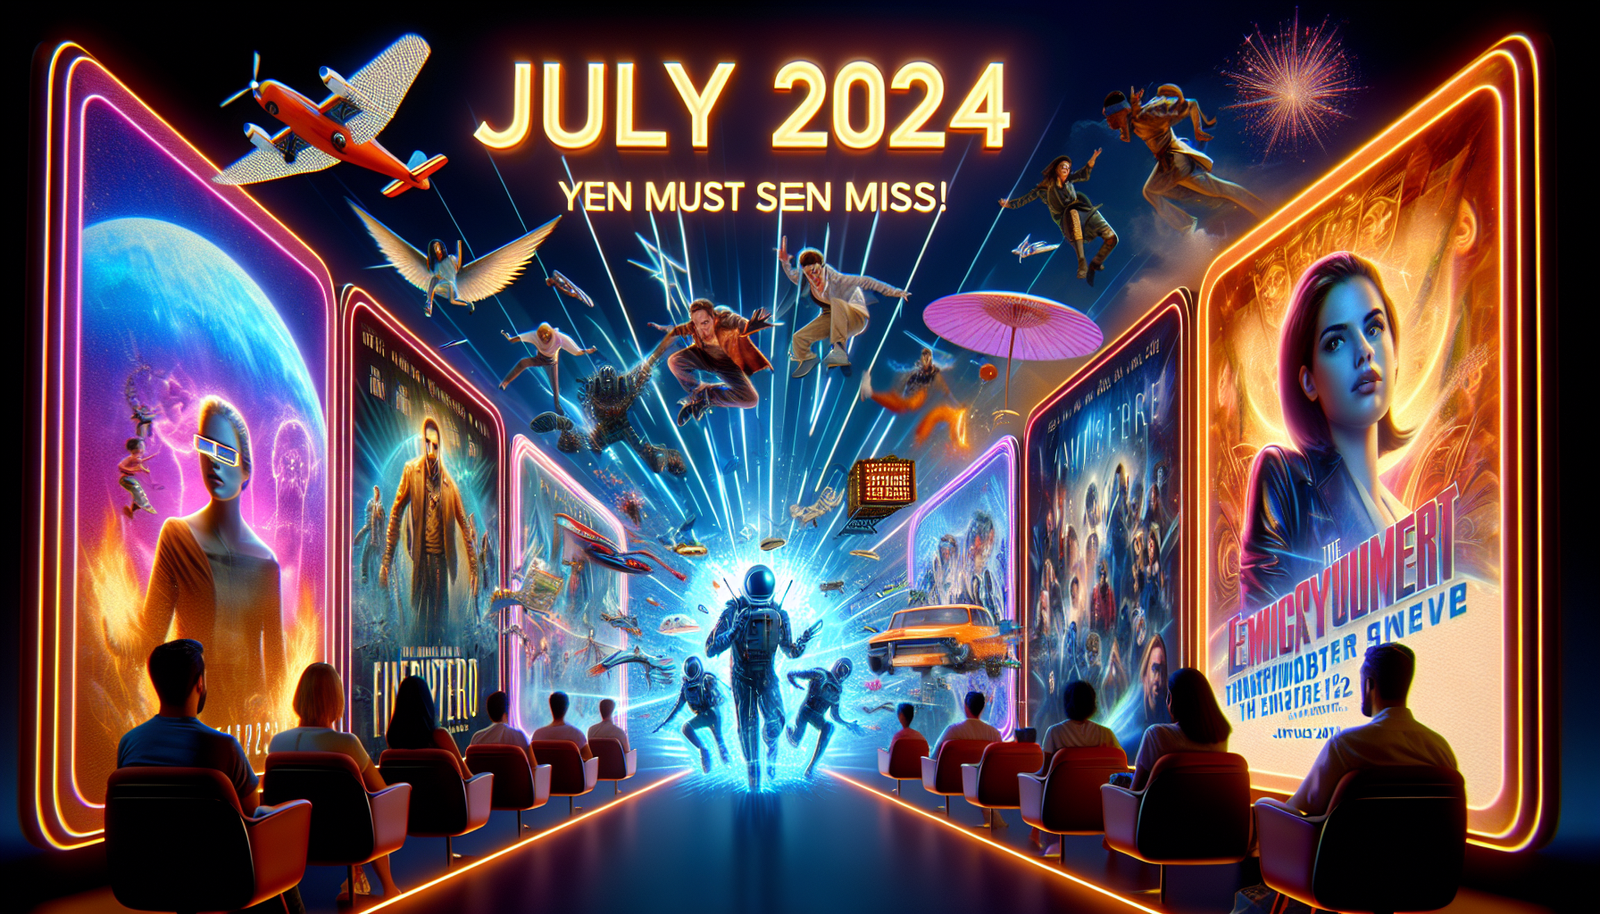 scopri gli incredibili nuovi programmi e film in arrivo su Netflix a luglio 2024 che semplicemente non puoi permetterti di perdere. preparatevi a stupirvi!